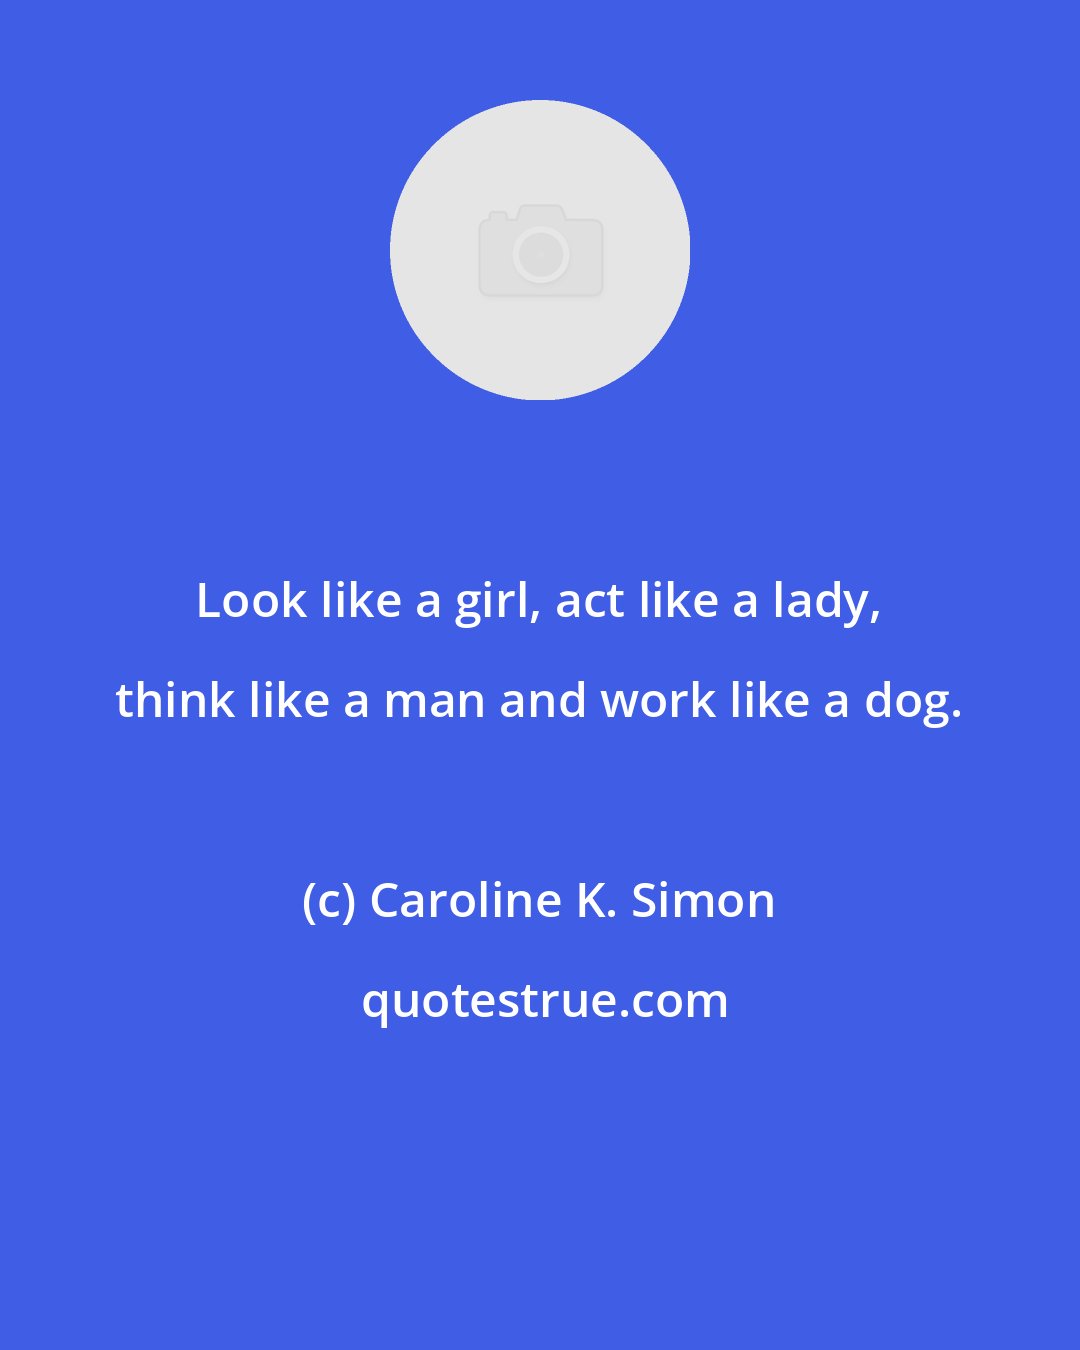 Caroline K. Simon: Look like a girl, act like a lady, think like a man and work like a dog.